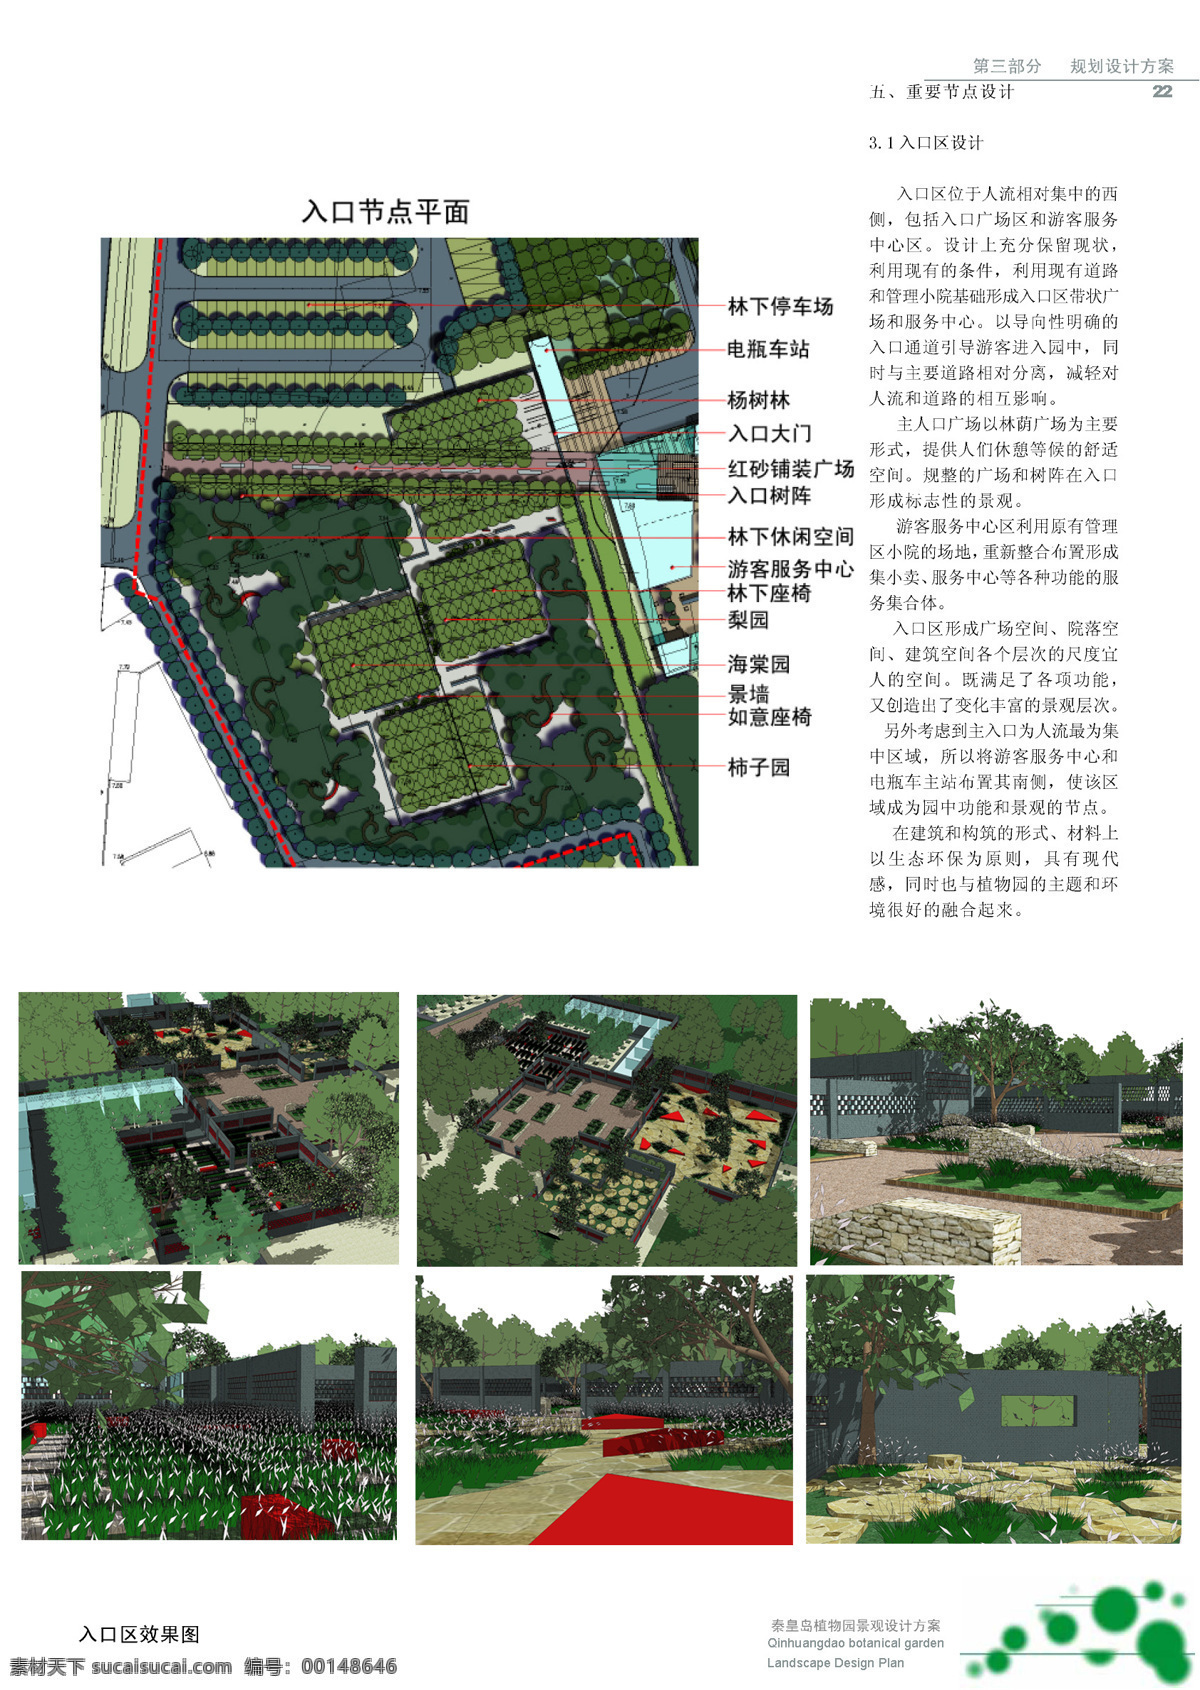 秦皇岛 植物园 山地 园 景观 方案 修改 土人 园林 方案文本 公共 规划 白色